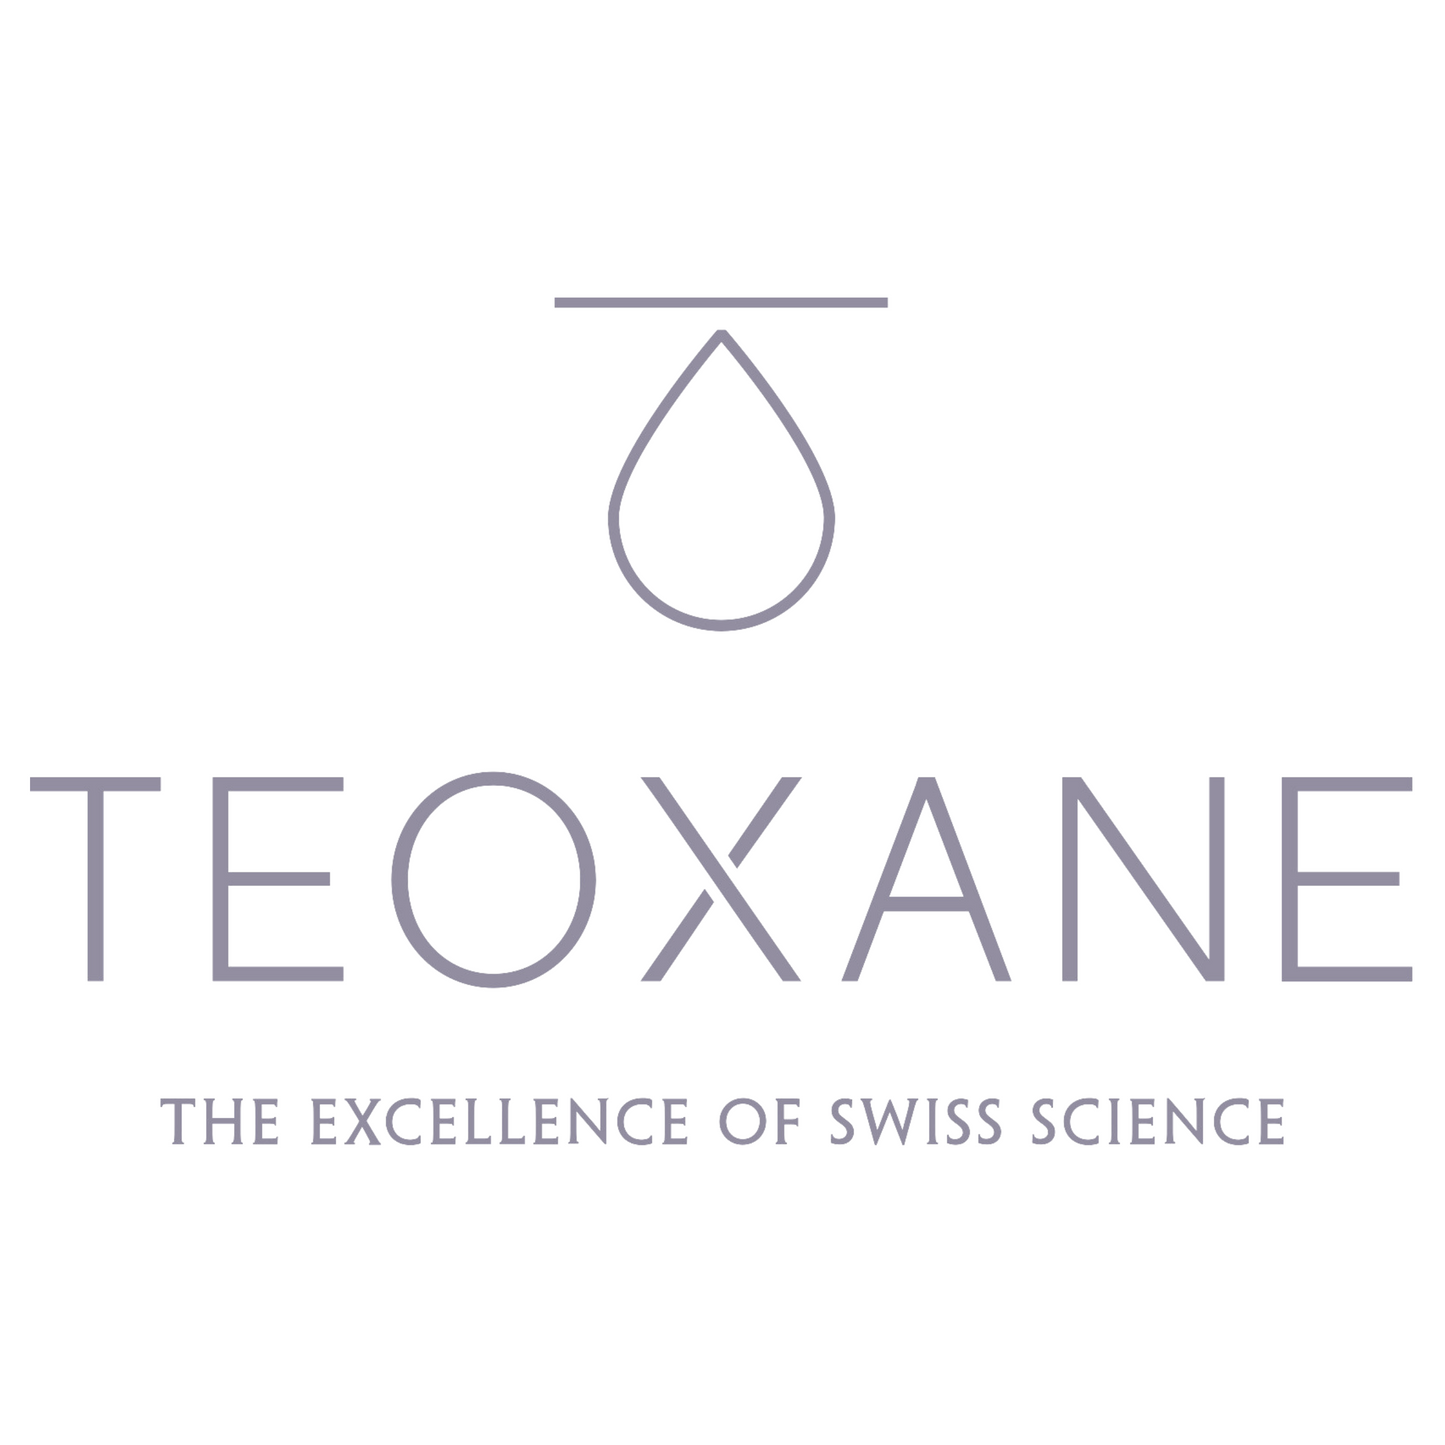 Teoxane - Perfect Skin Refiner Crema rigenerante 50 ml